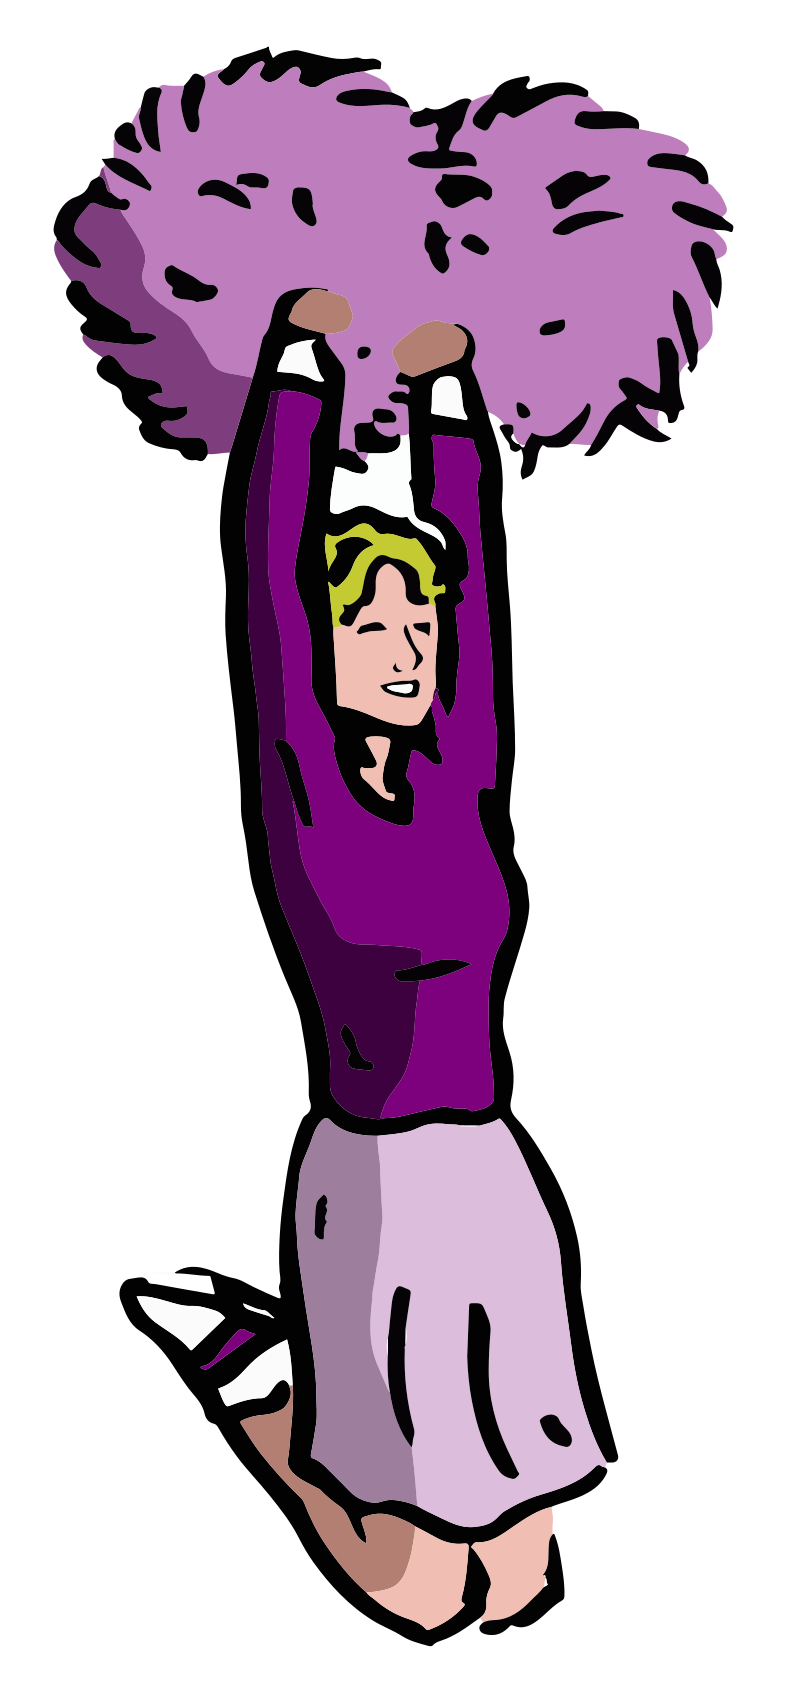 Cartoon drawing of a cheerleader